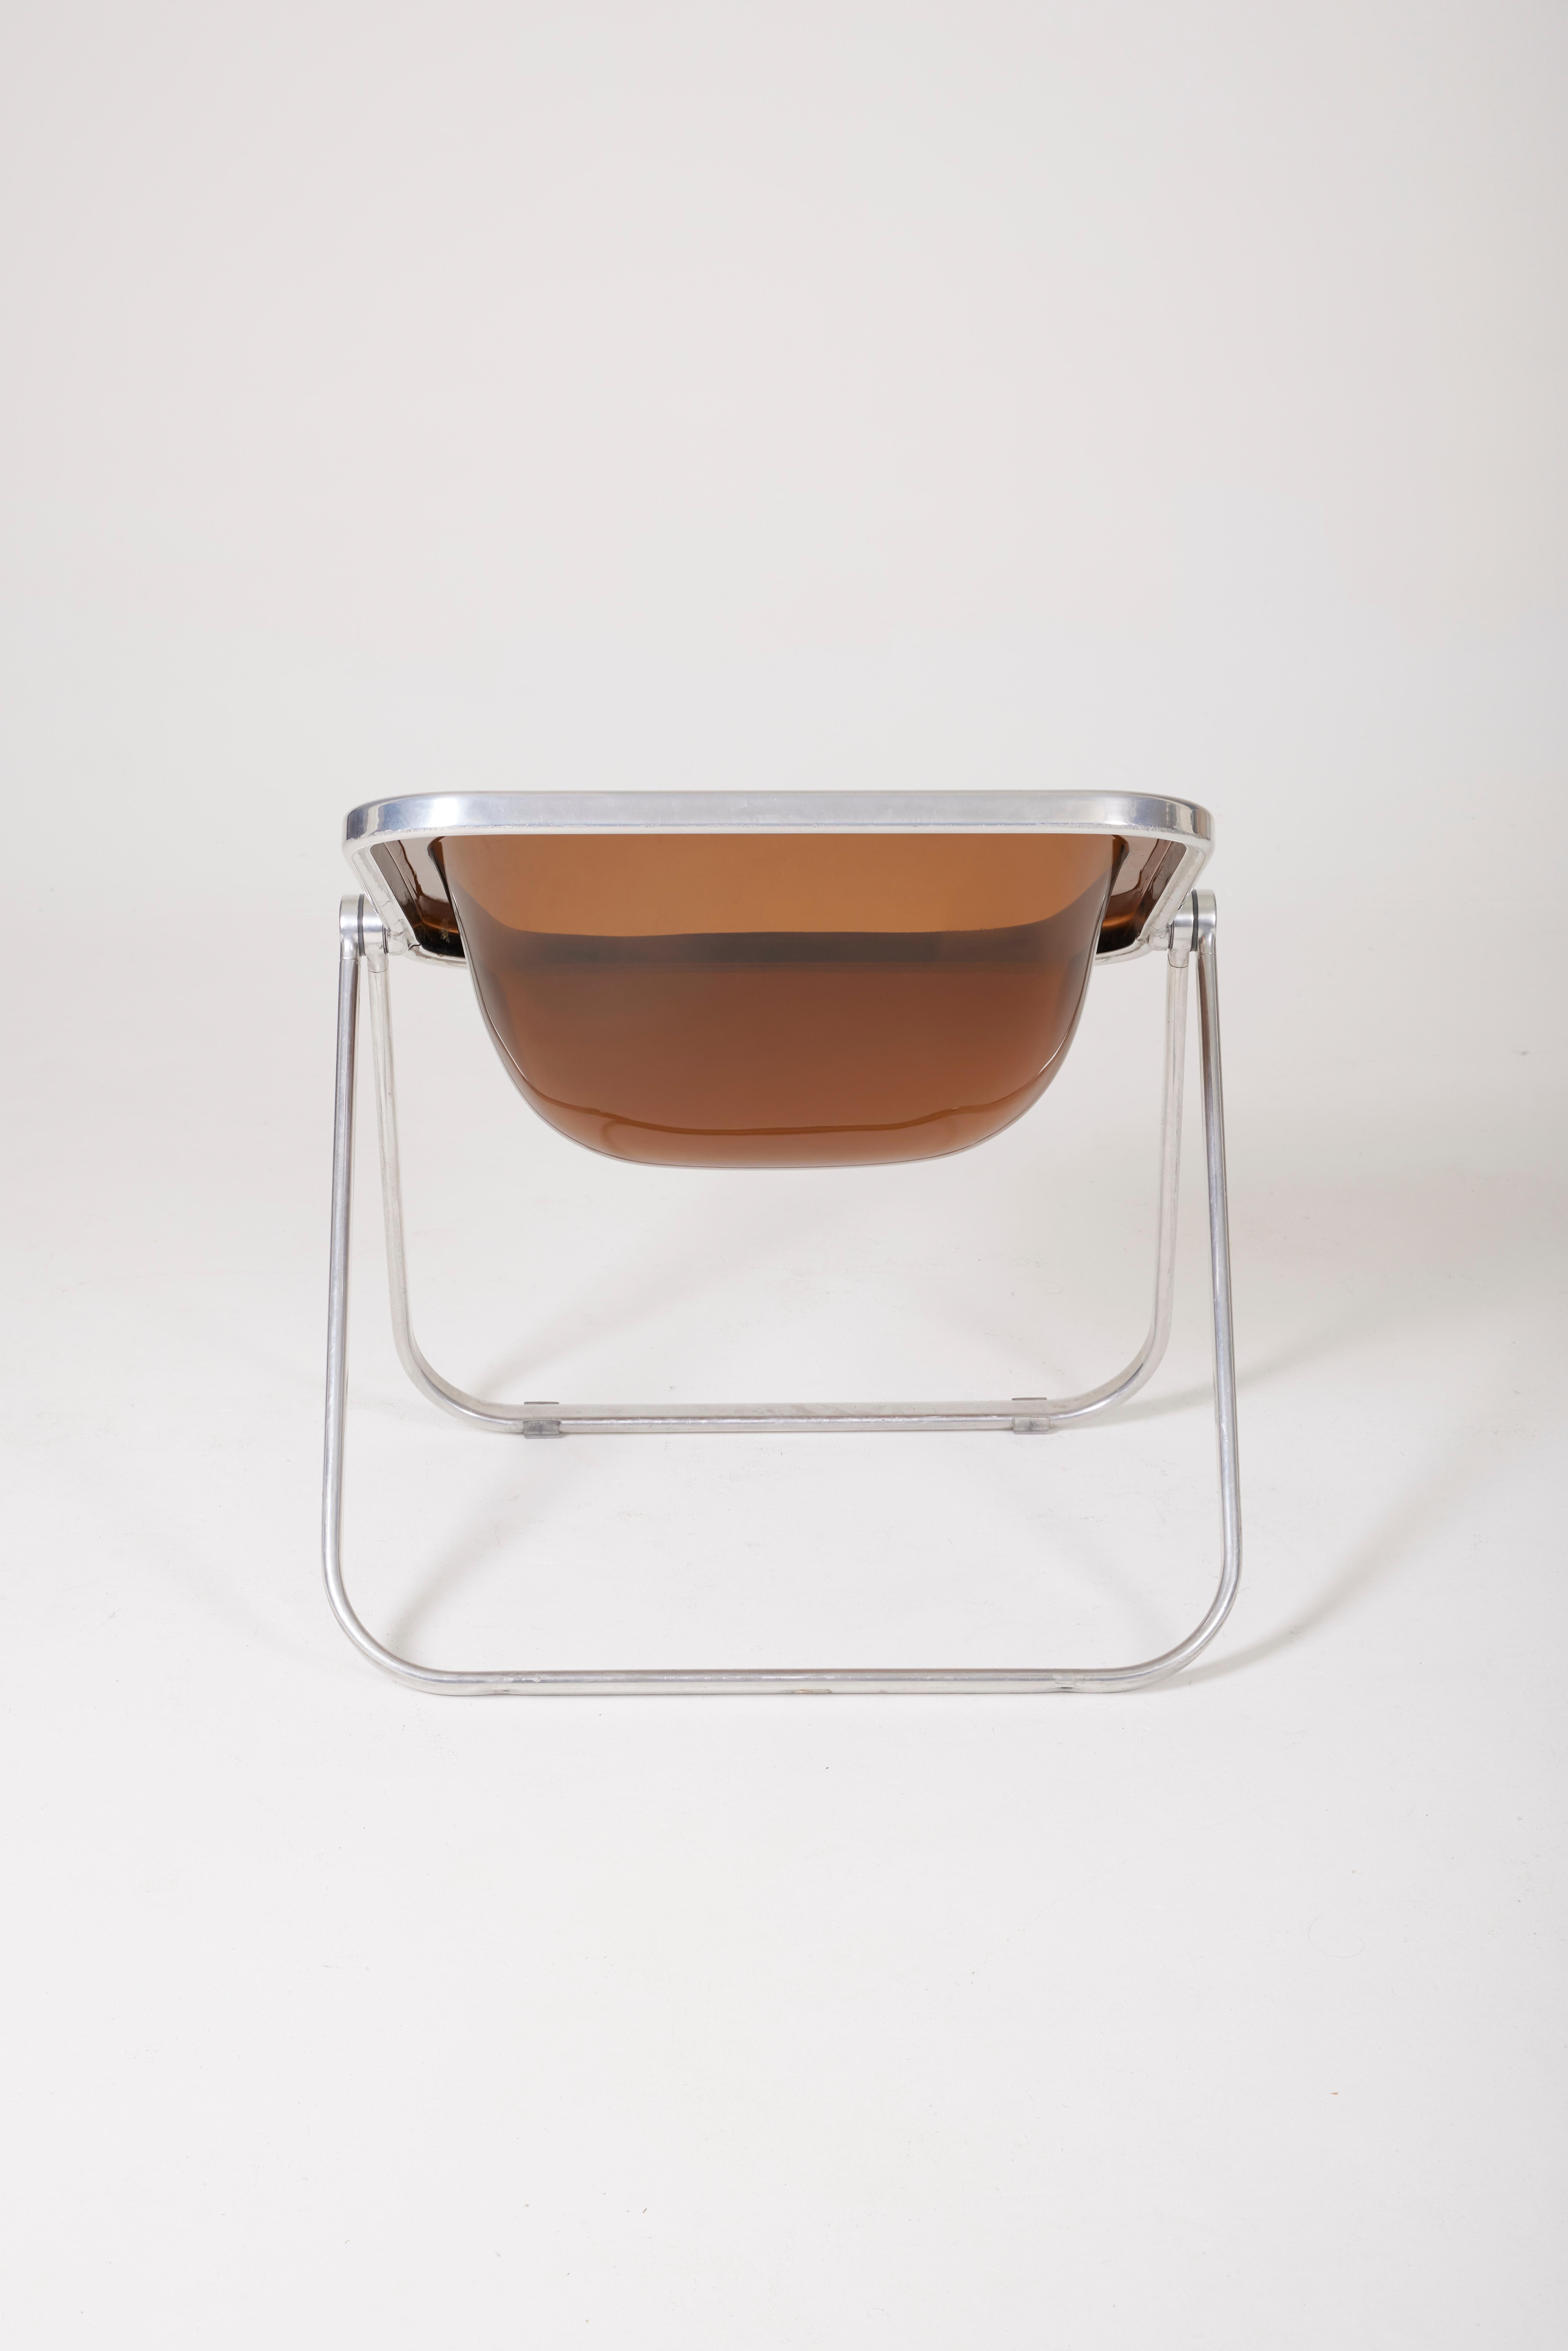 'Plona' Plexiglass Armchair by Giancarlo Piretti 1